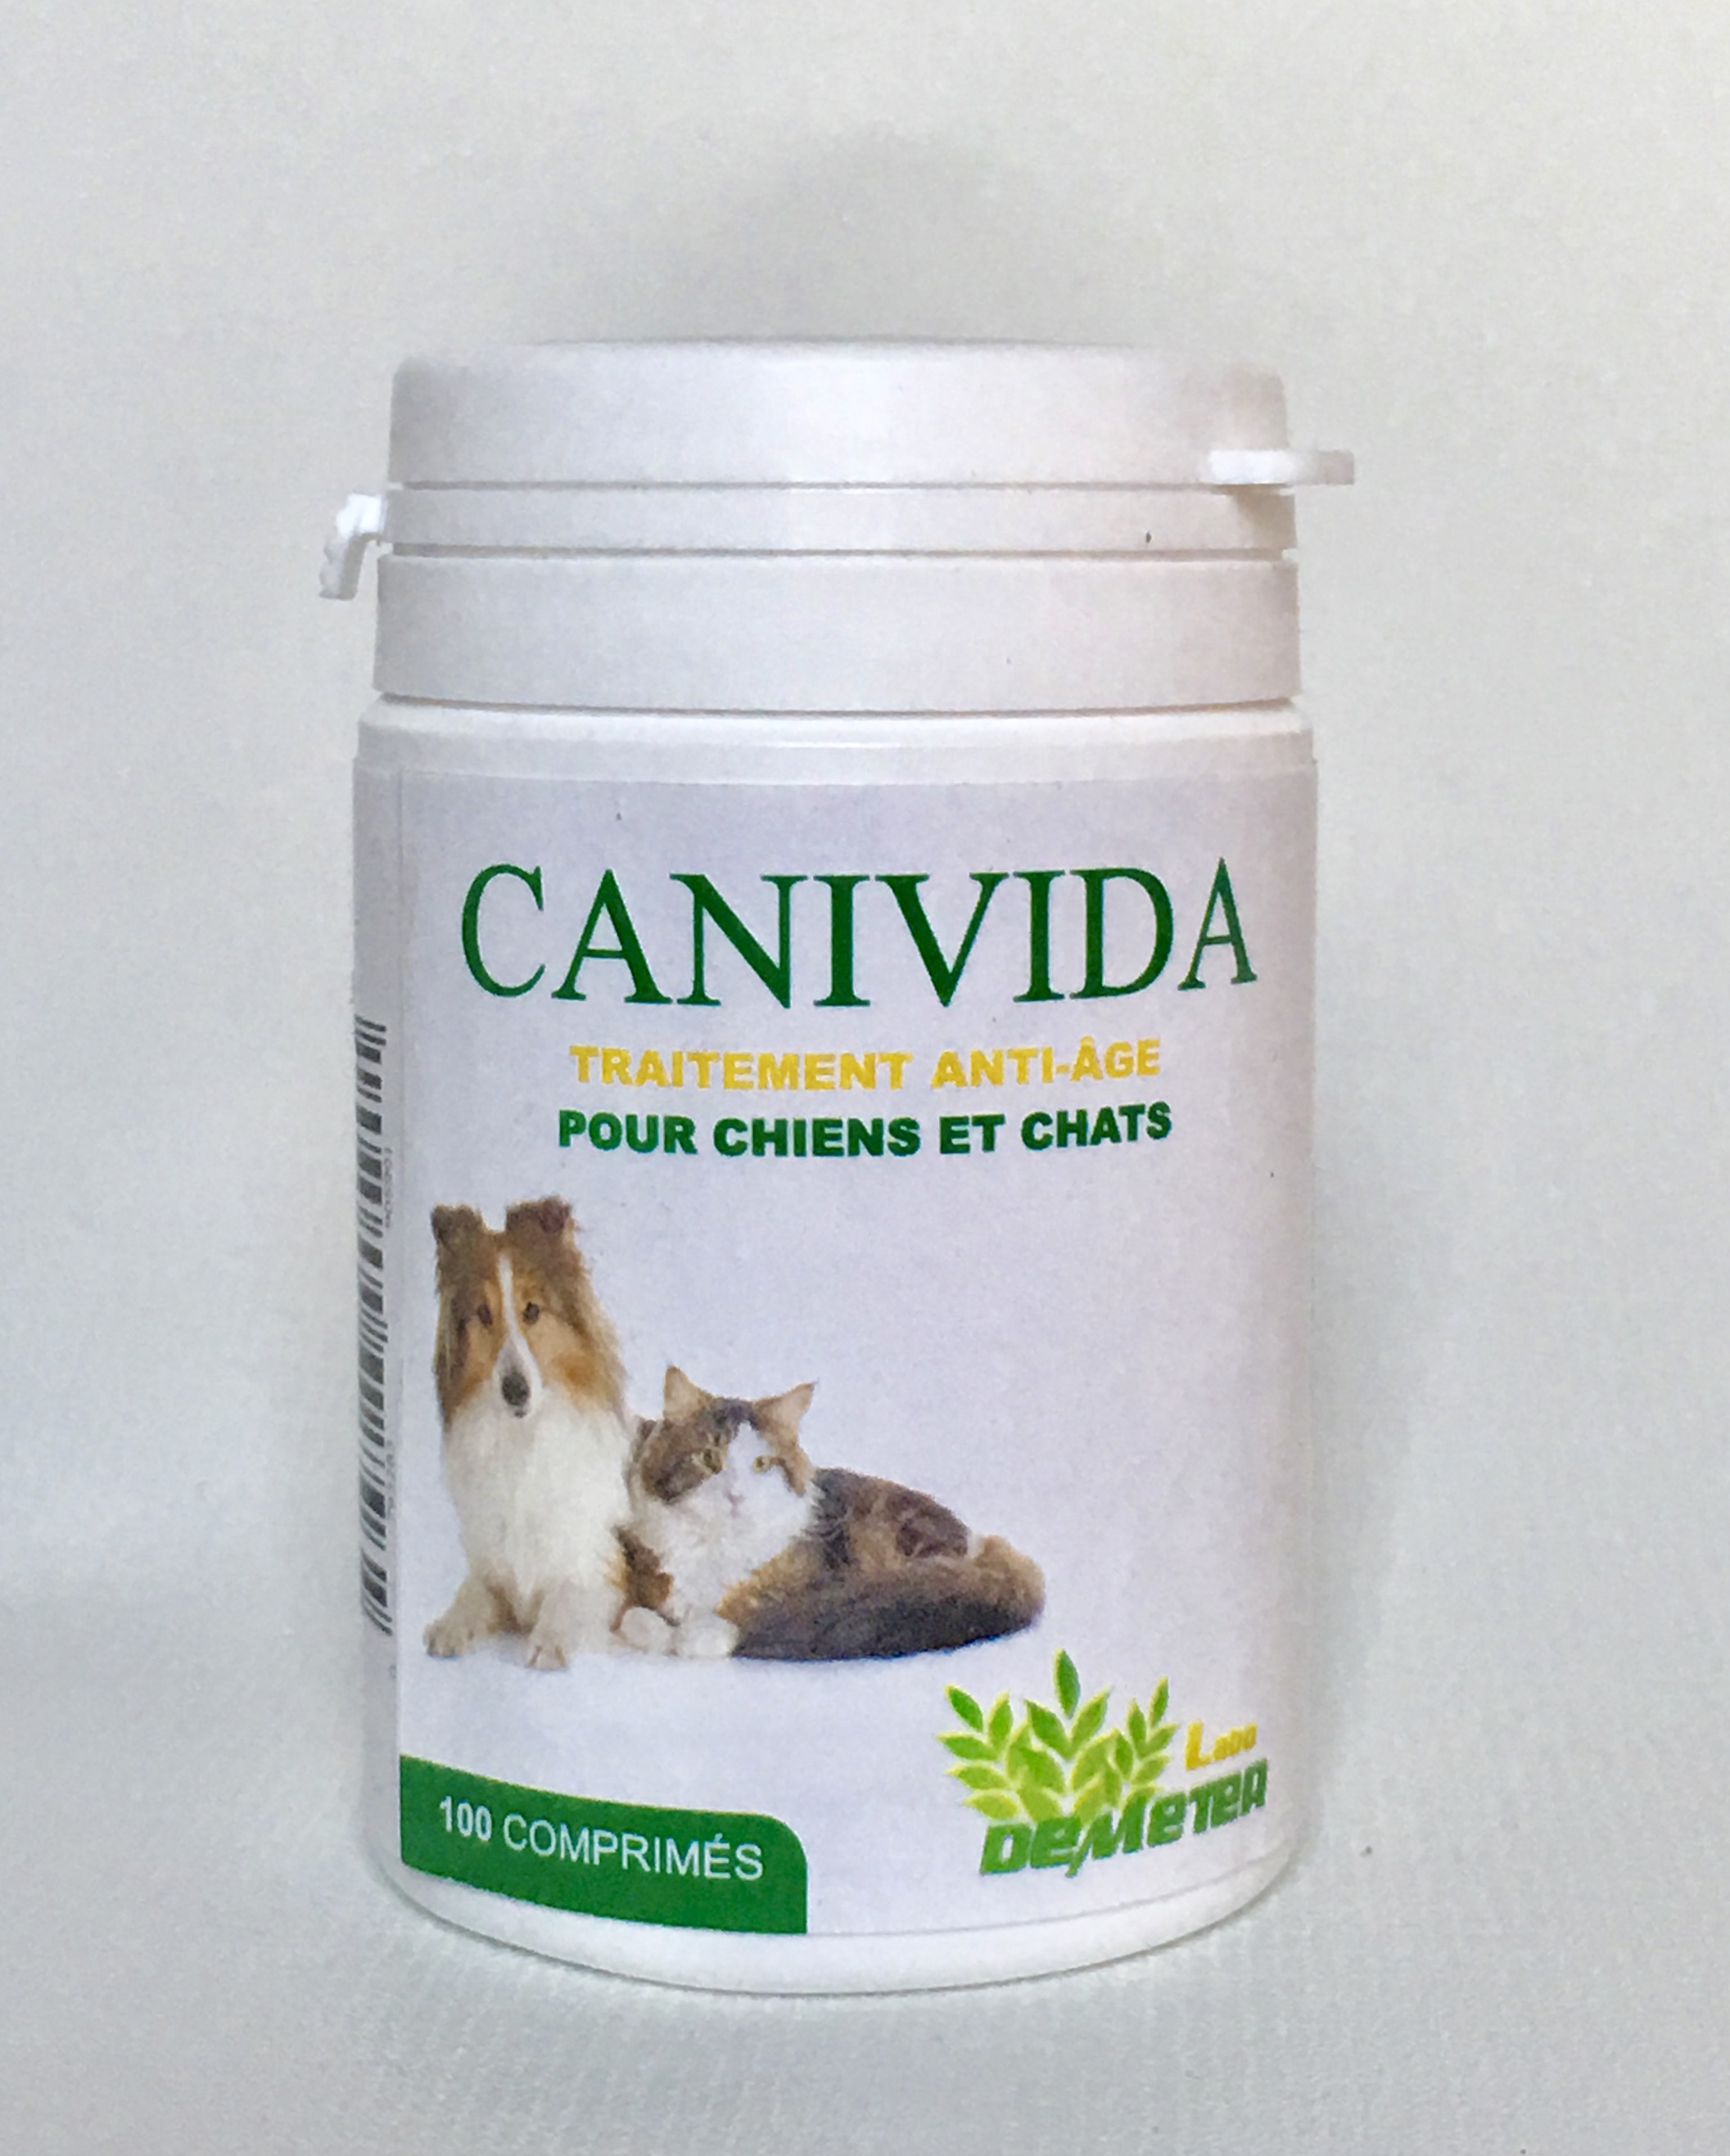 Canivida produit naturel anti age pour chat